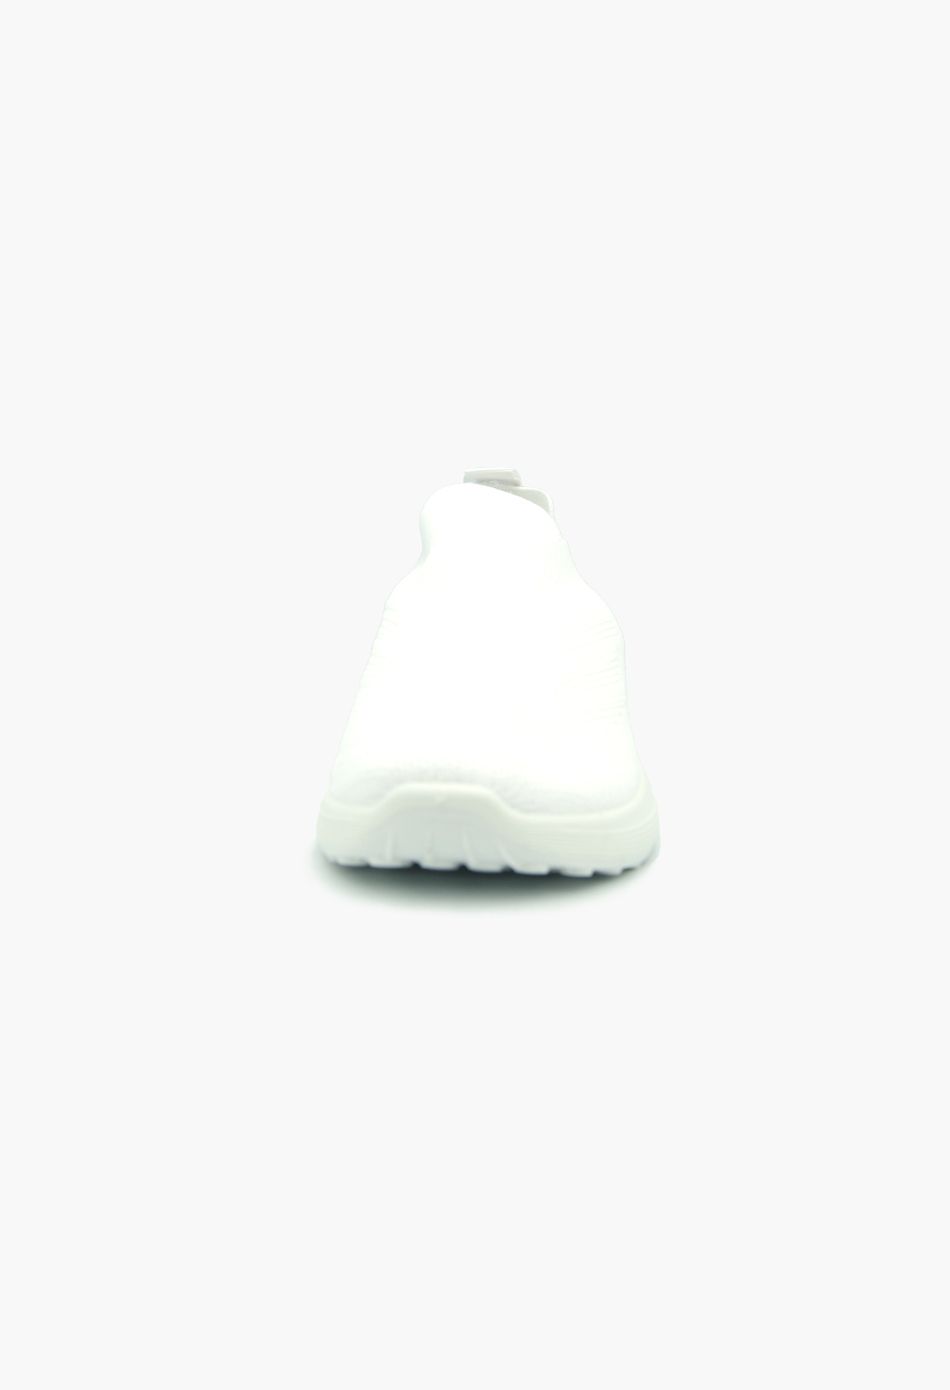 Γυναικεία sneakers τύπου κάλτσα λεύκο / ZY505-white Γυναικεία Αθλητικά και Sneakers joya.gr